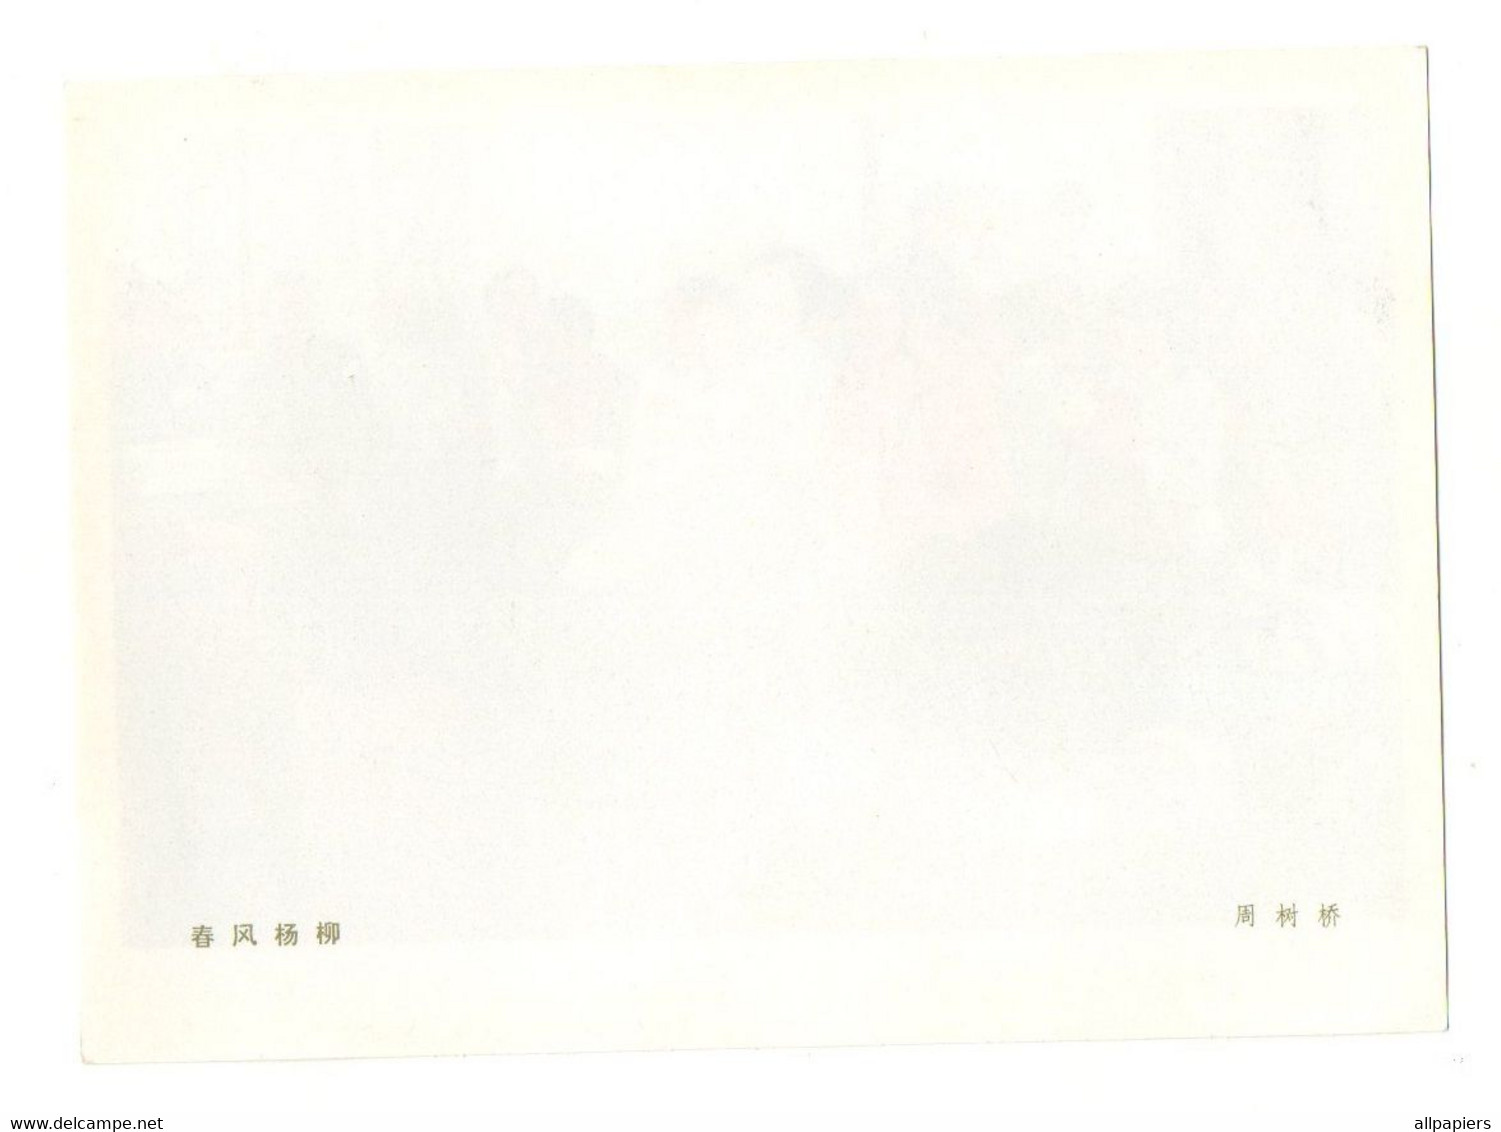 Illustration Couleur Chinoise Ou Autre Pays Asiatique Représentant Un Groupe De Voyageurs - Format : 18x13 Cm - Papier Chinois